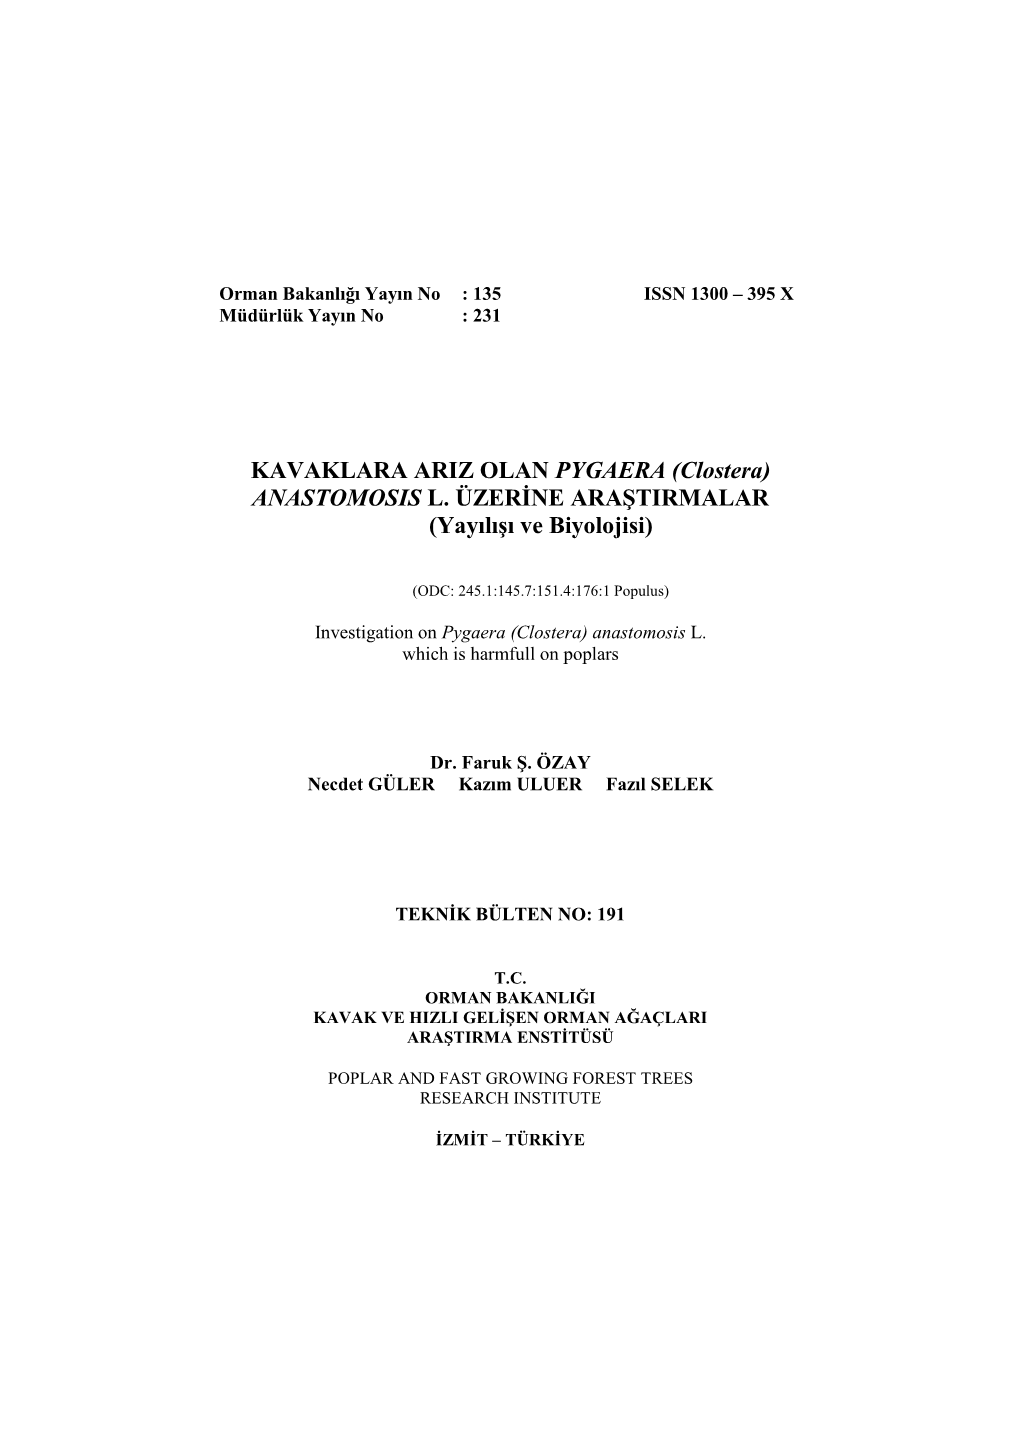 Orman Bakanlığı Yayın No : 135 ISSN 1300 – 395 X Müdürlük Yayın No : 231